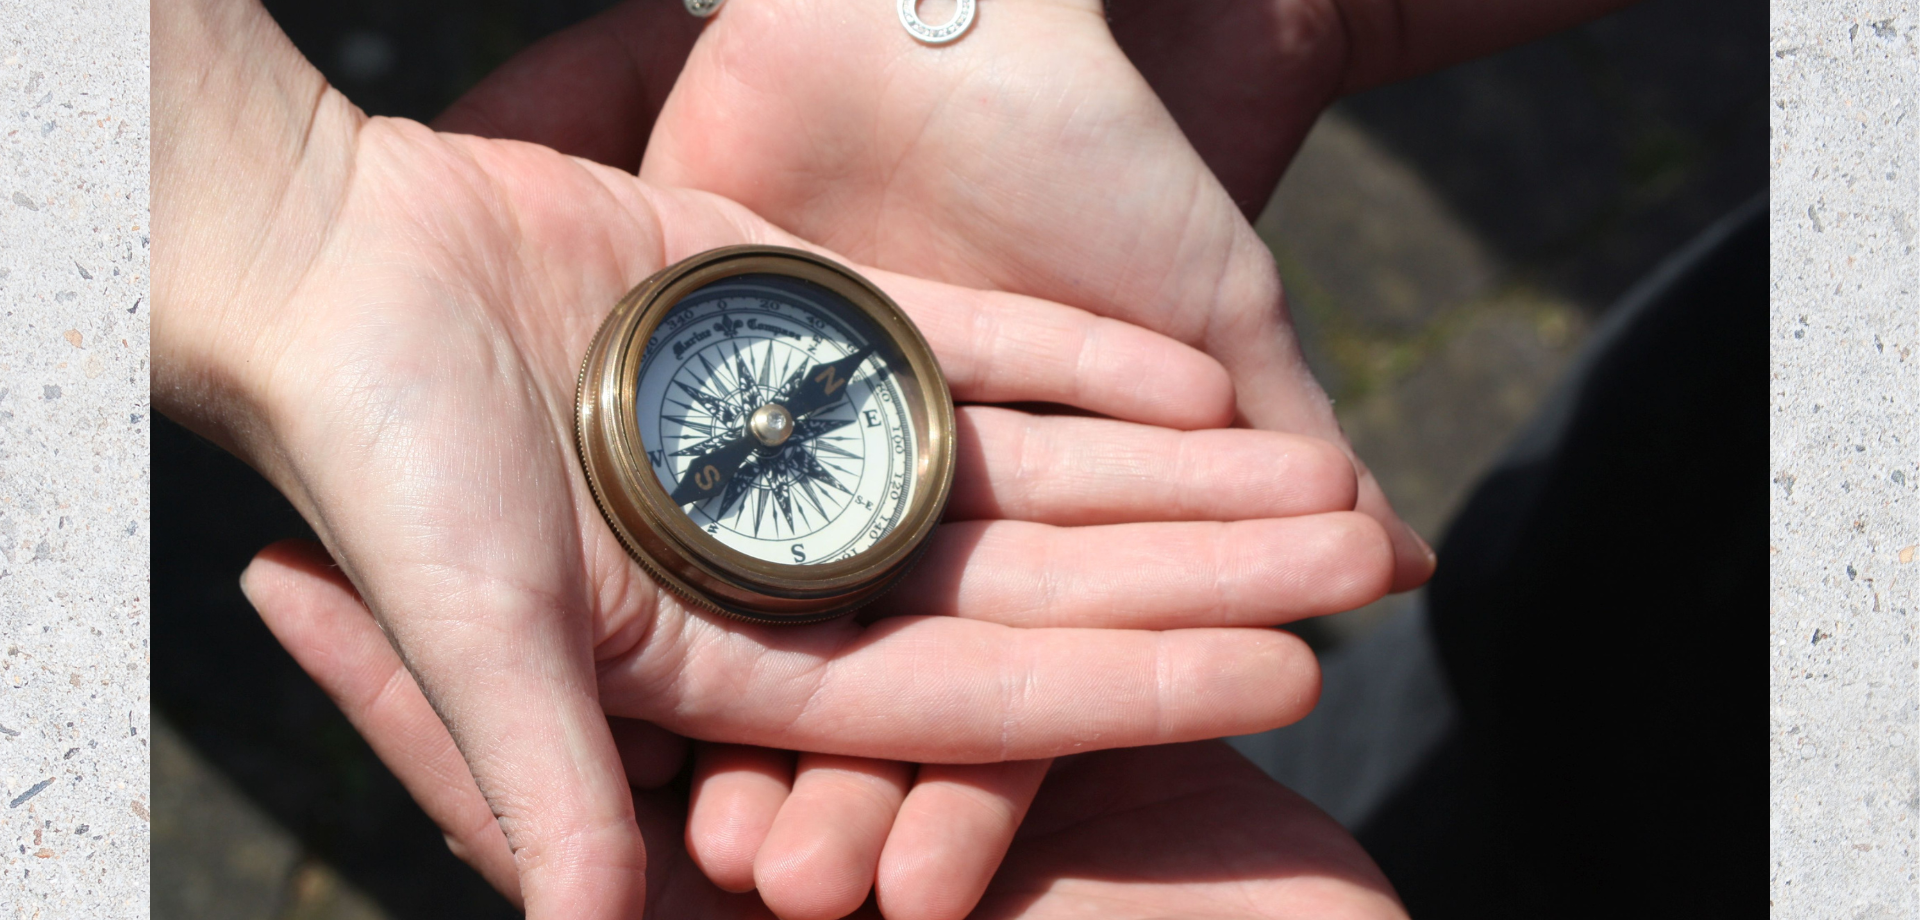 Das Bild zeigt Hände, in denen ein kleiner Kompass liegt.